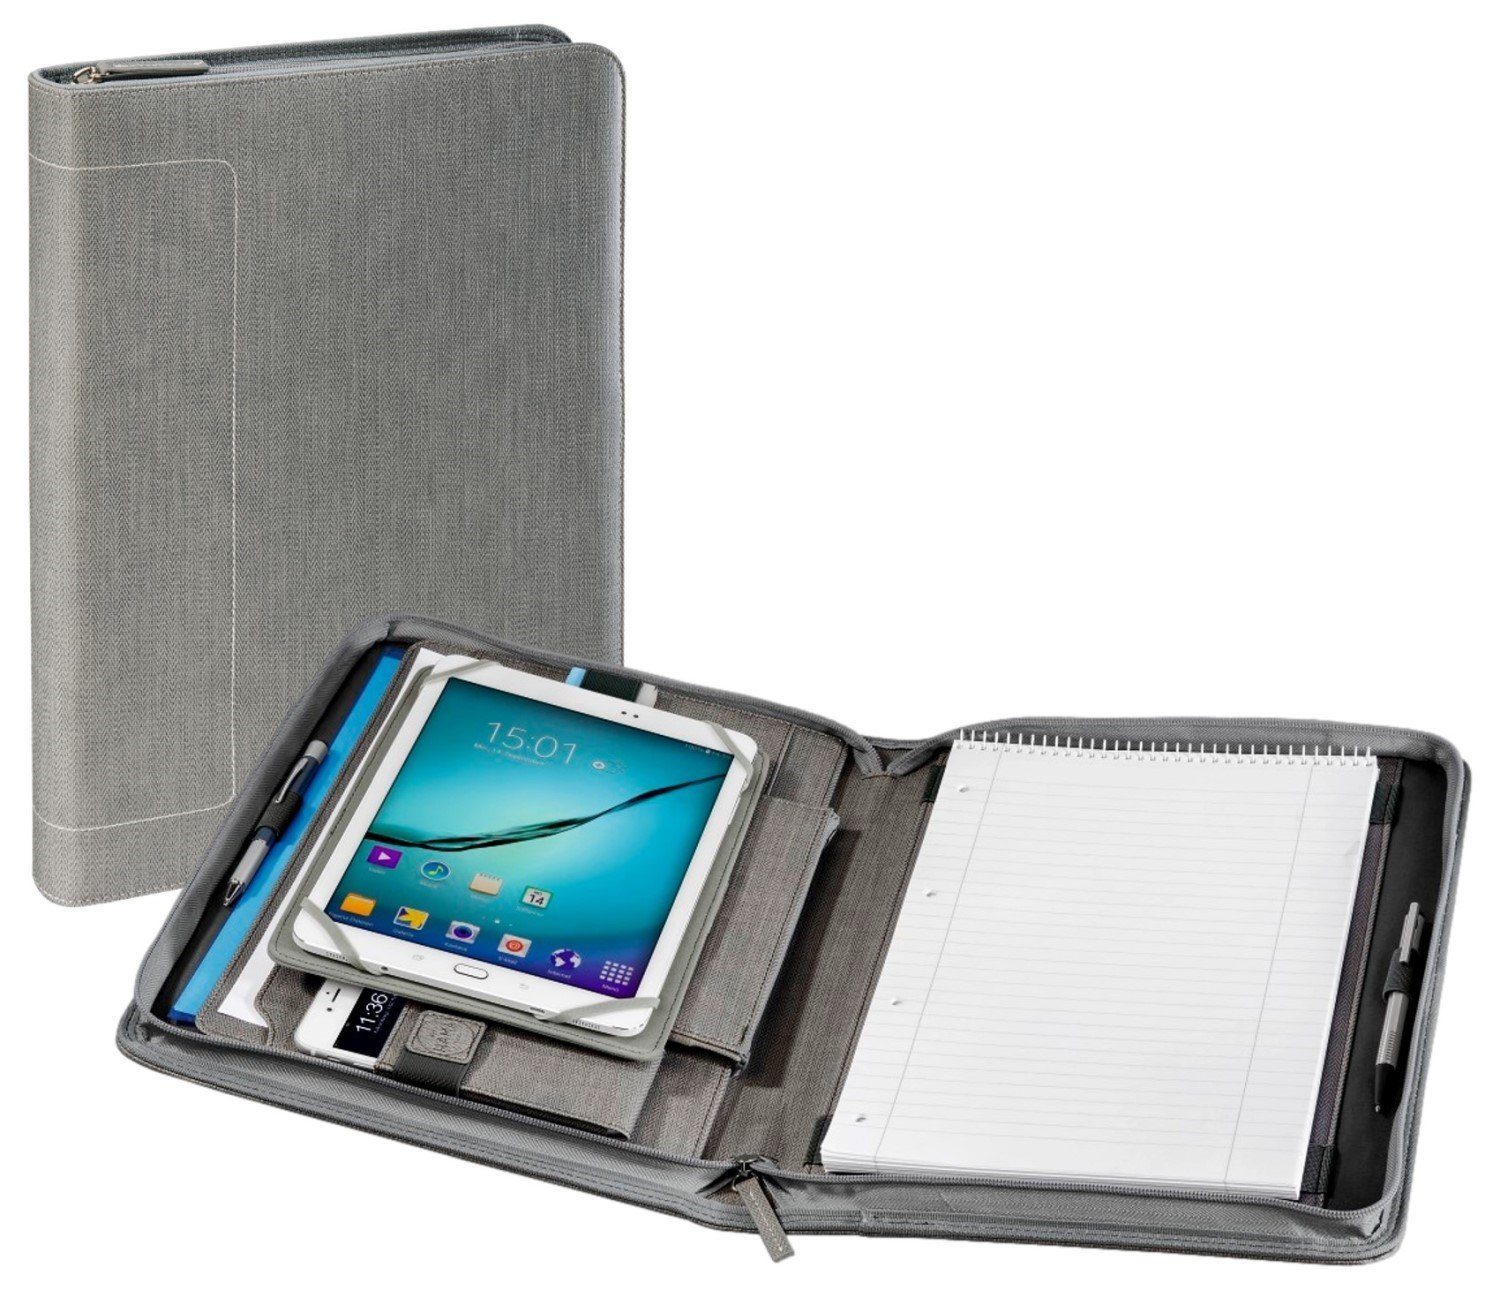 Hama Tablet-Hülle 3in1 Tablet-Organizer A4 Tasche Hülle, Business Case mit  Tablet-Hülle, A4 Dokumentenfach, Fach für Schreibblock, diverse  Zubehör-Fächer, passend für 9,7" 10" 10,1" 10,2" Tablet PC / iPad,  Herausnehmbare Tablet-Hülle für Tabs